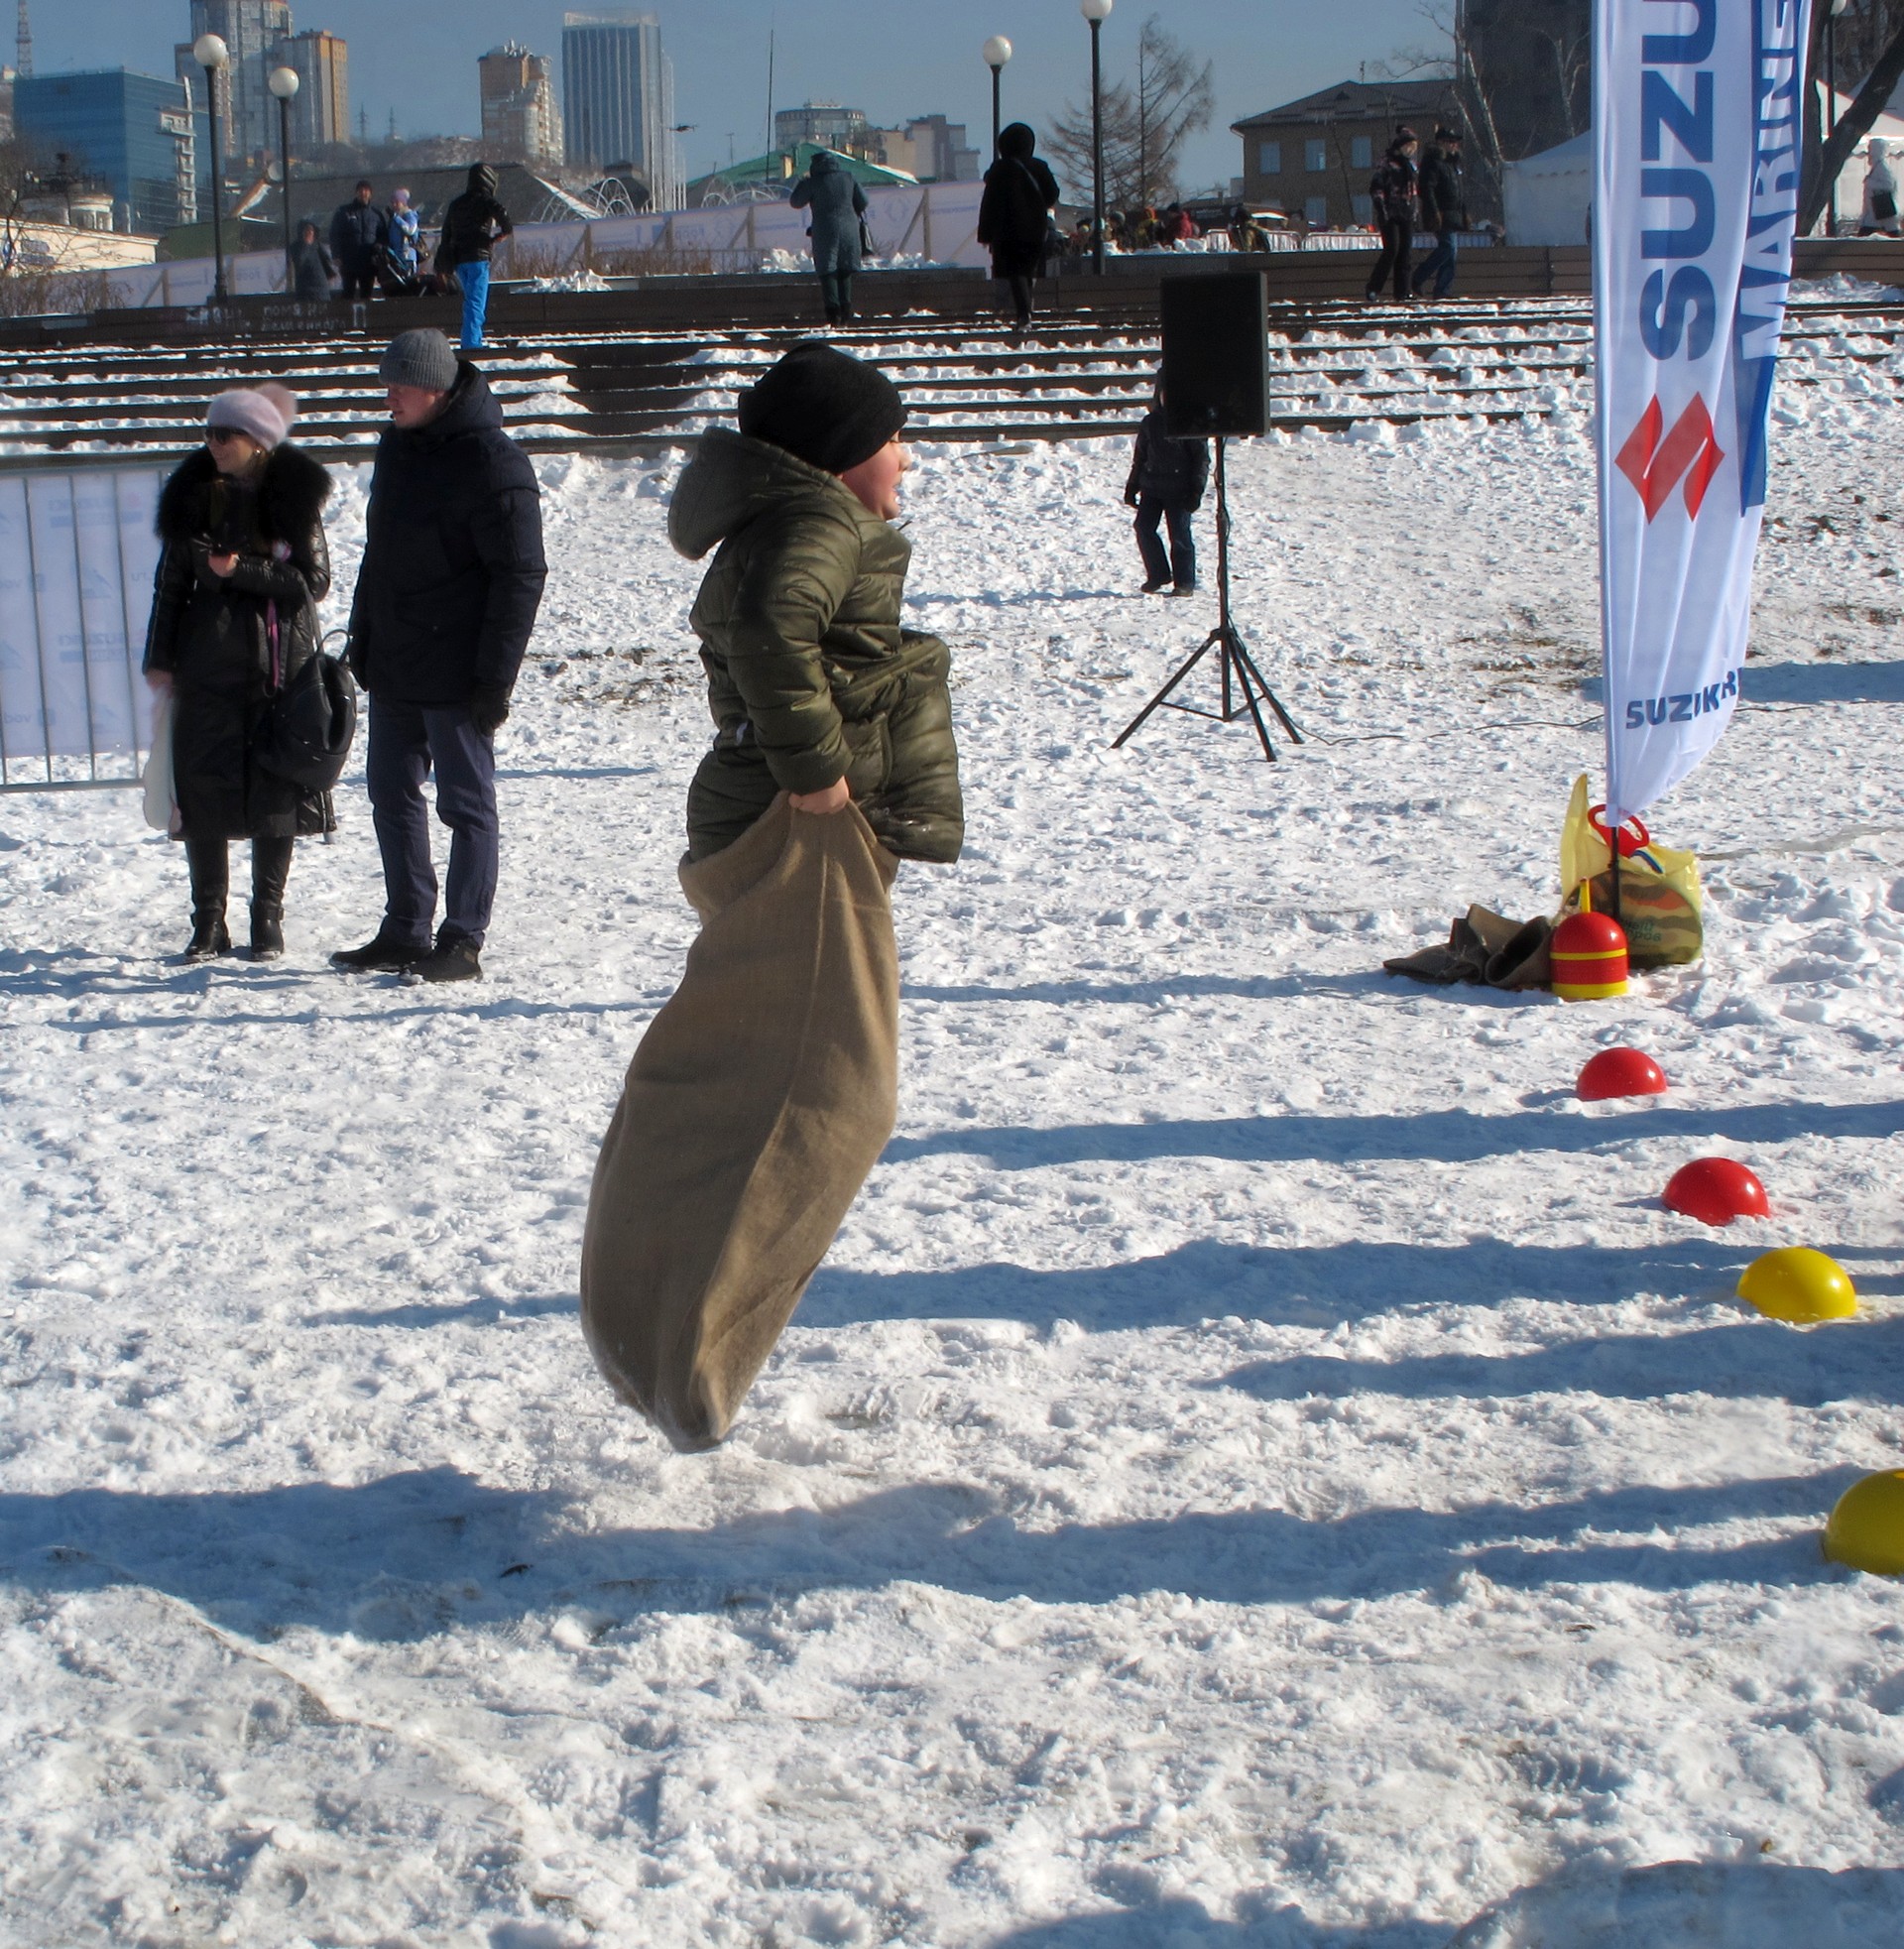 Конкурсы для зрителей. Народная рыбалка, Владивосток, 23 января